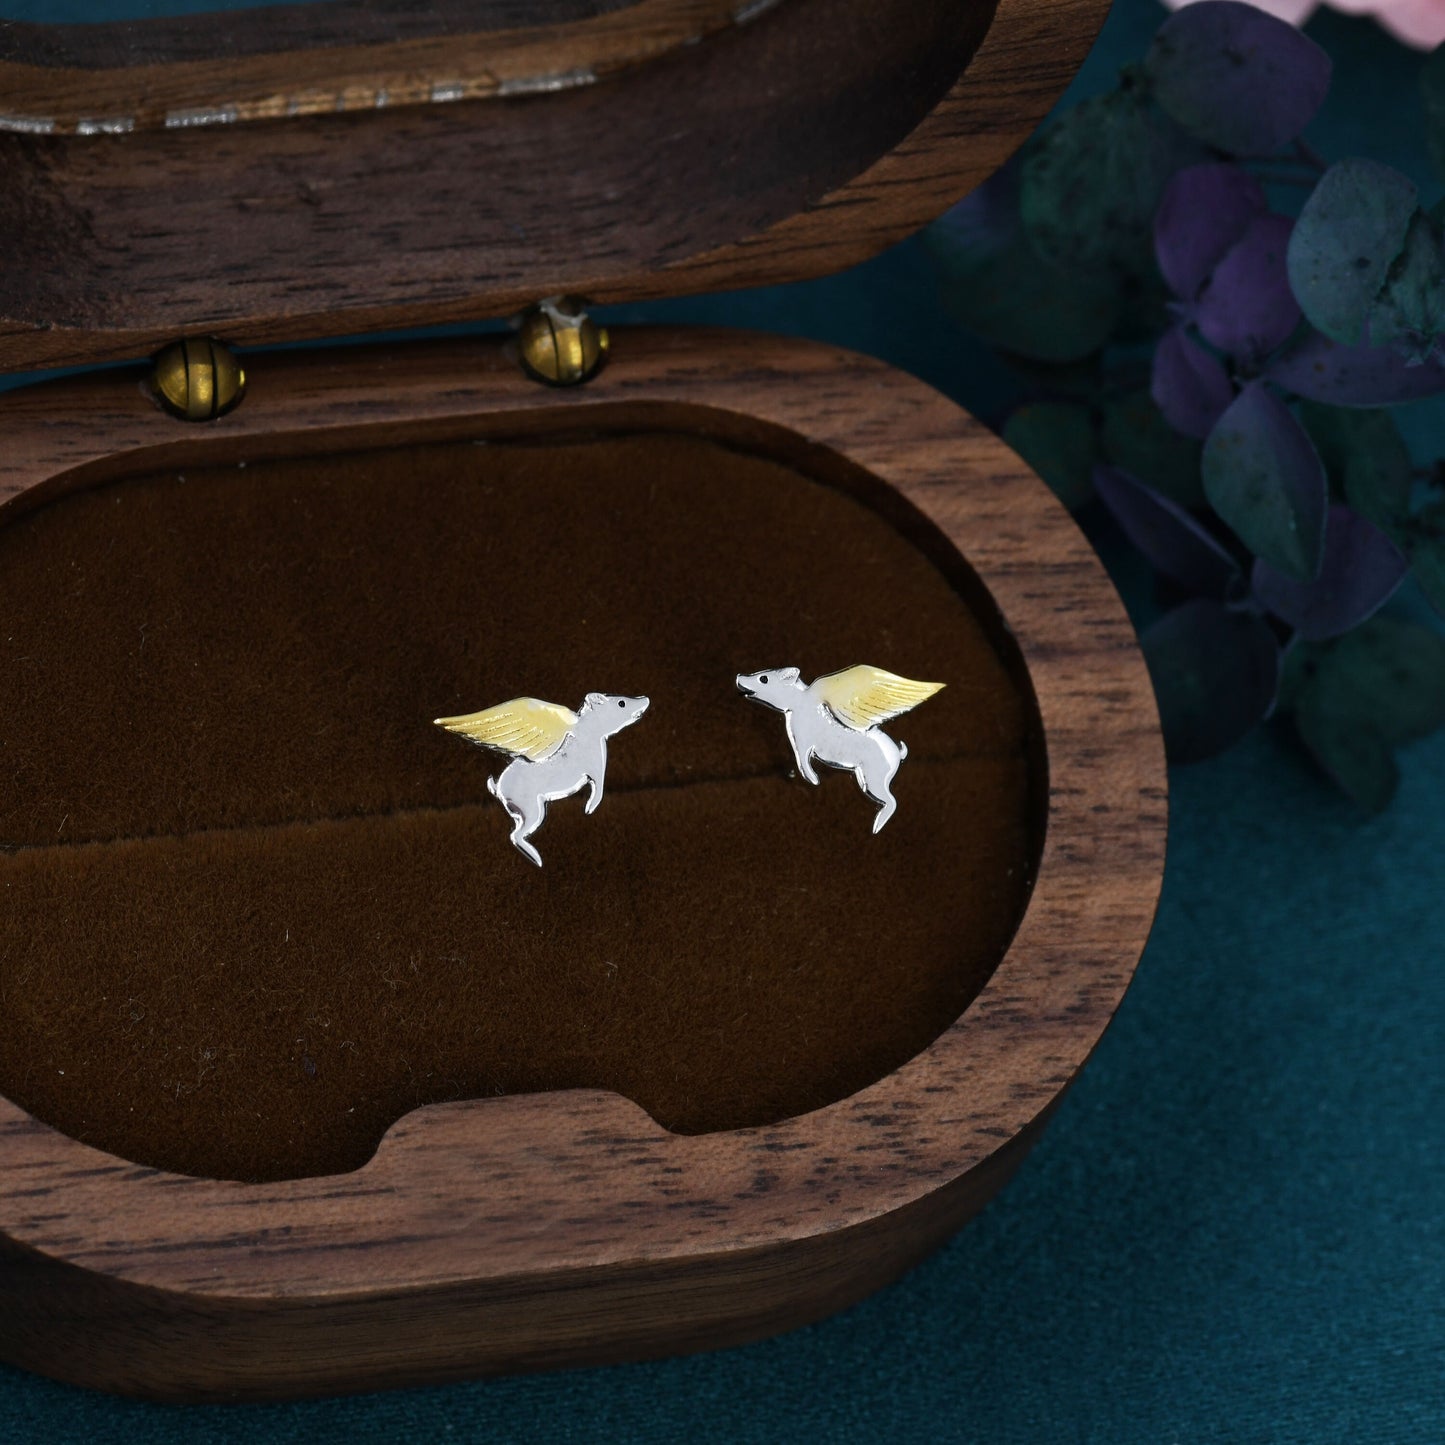 Flying Pig Stud Earrings in Sterling Silver - Pigs Can Fly - Farm Animal Stud Earrings  - Cute,  Fun, Whimsical